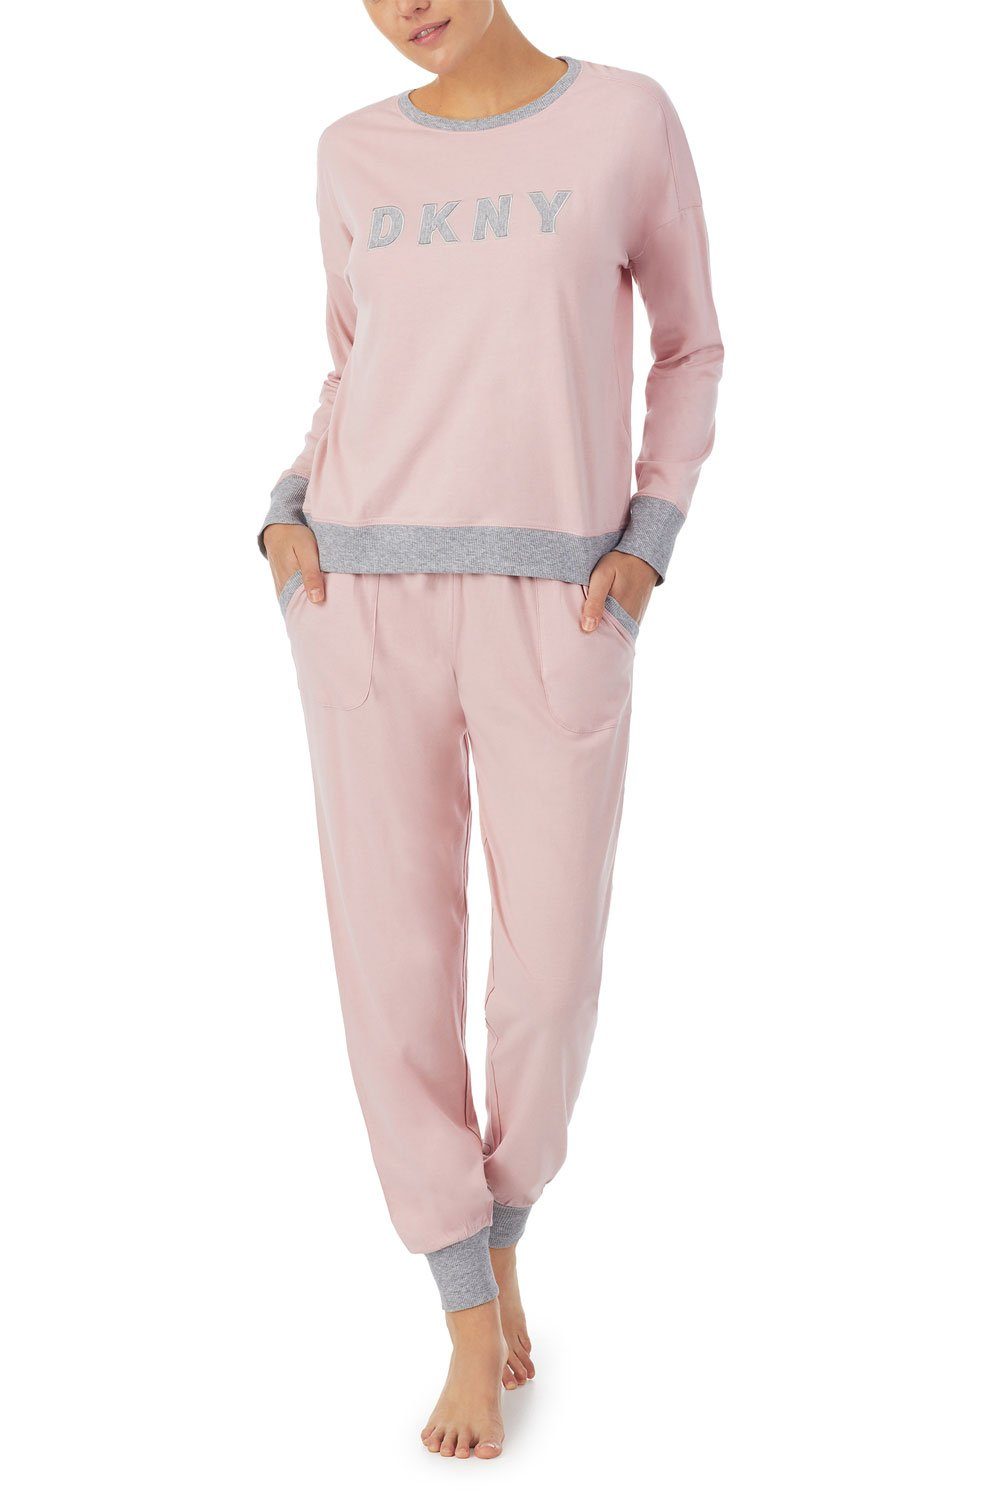 DKNY Pyjama Top & Jogger Set YI2919259